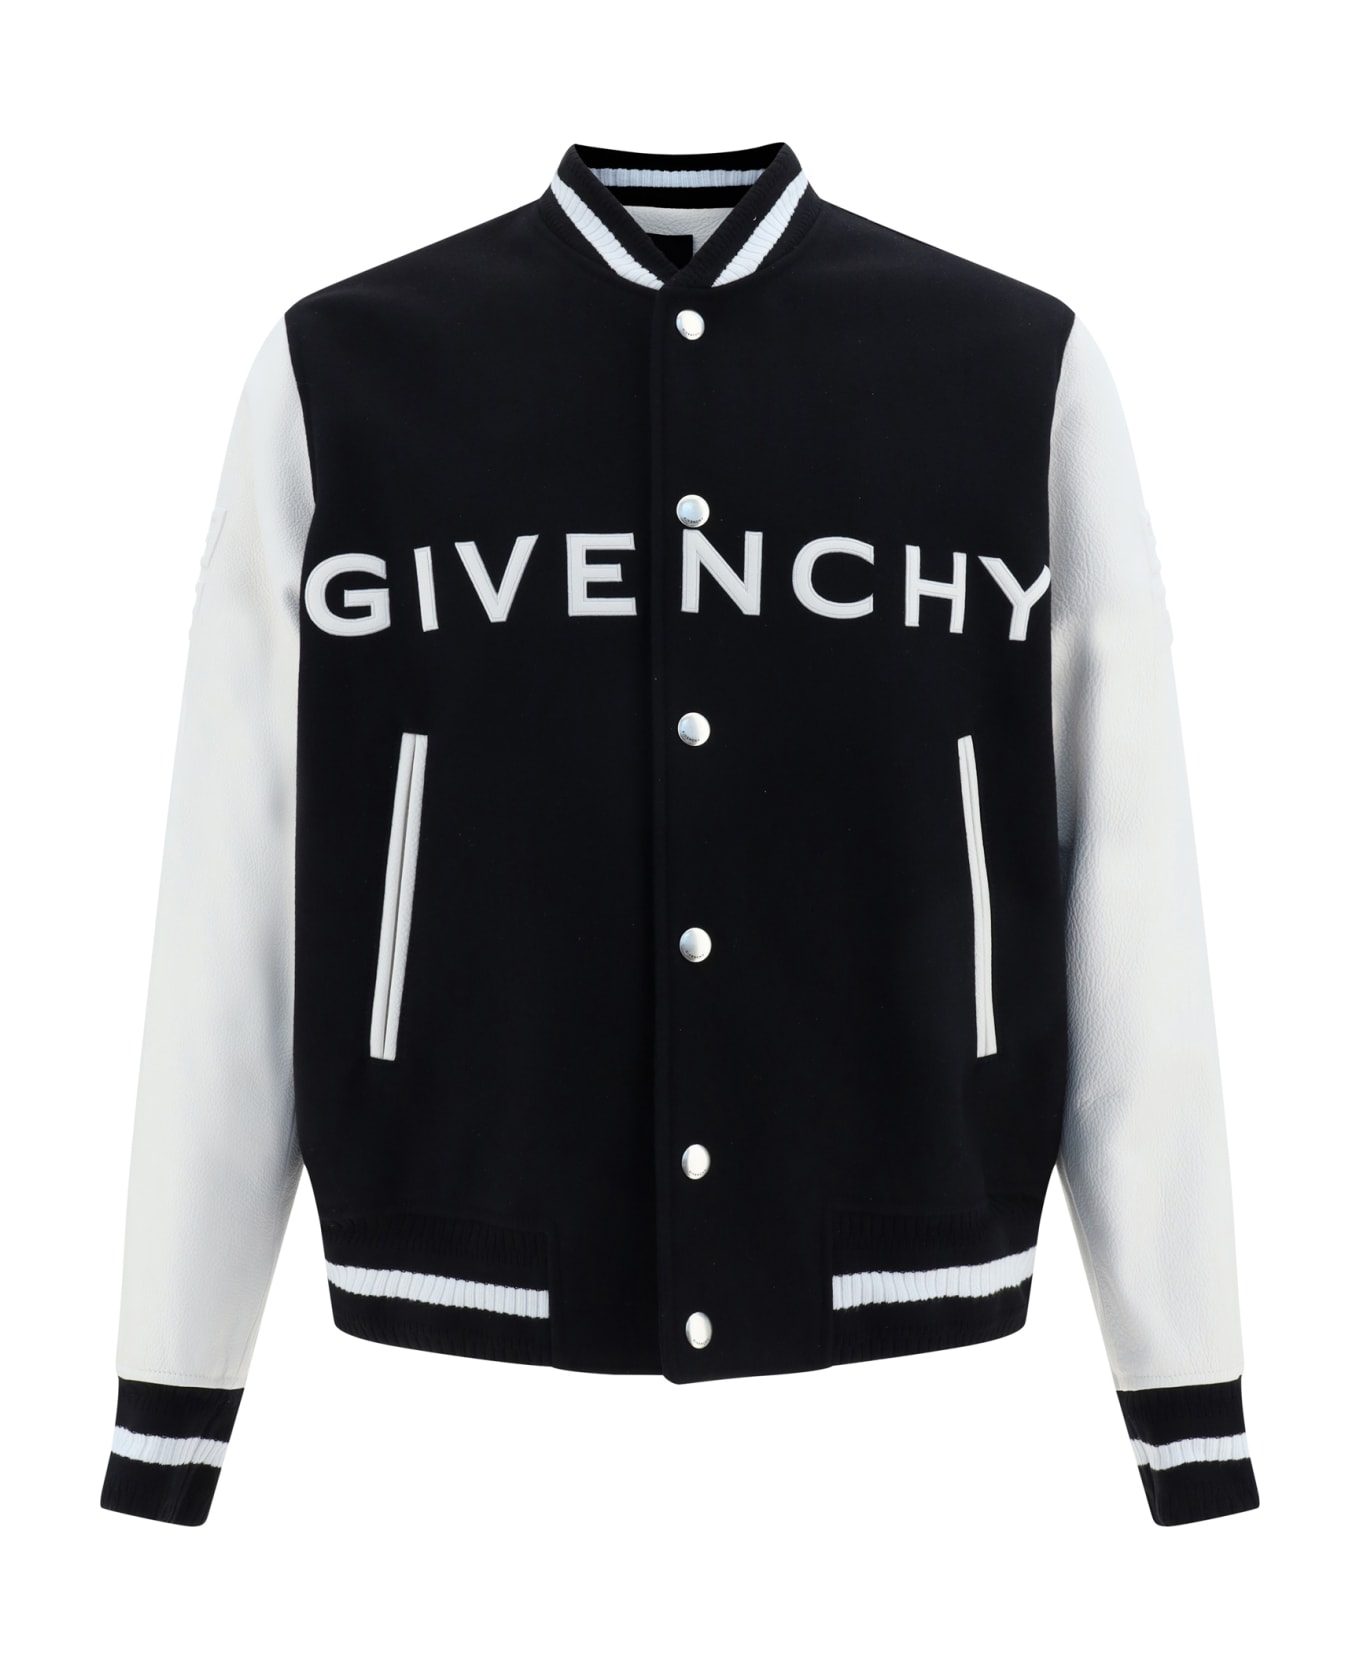 Givenchy Varsity Bomber Jacket - Black/white ジャケット